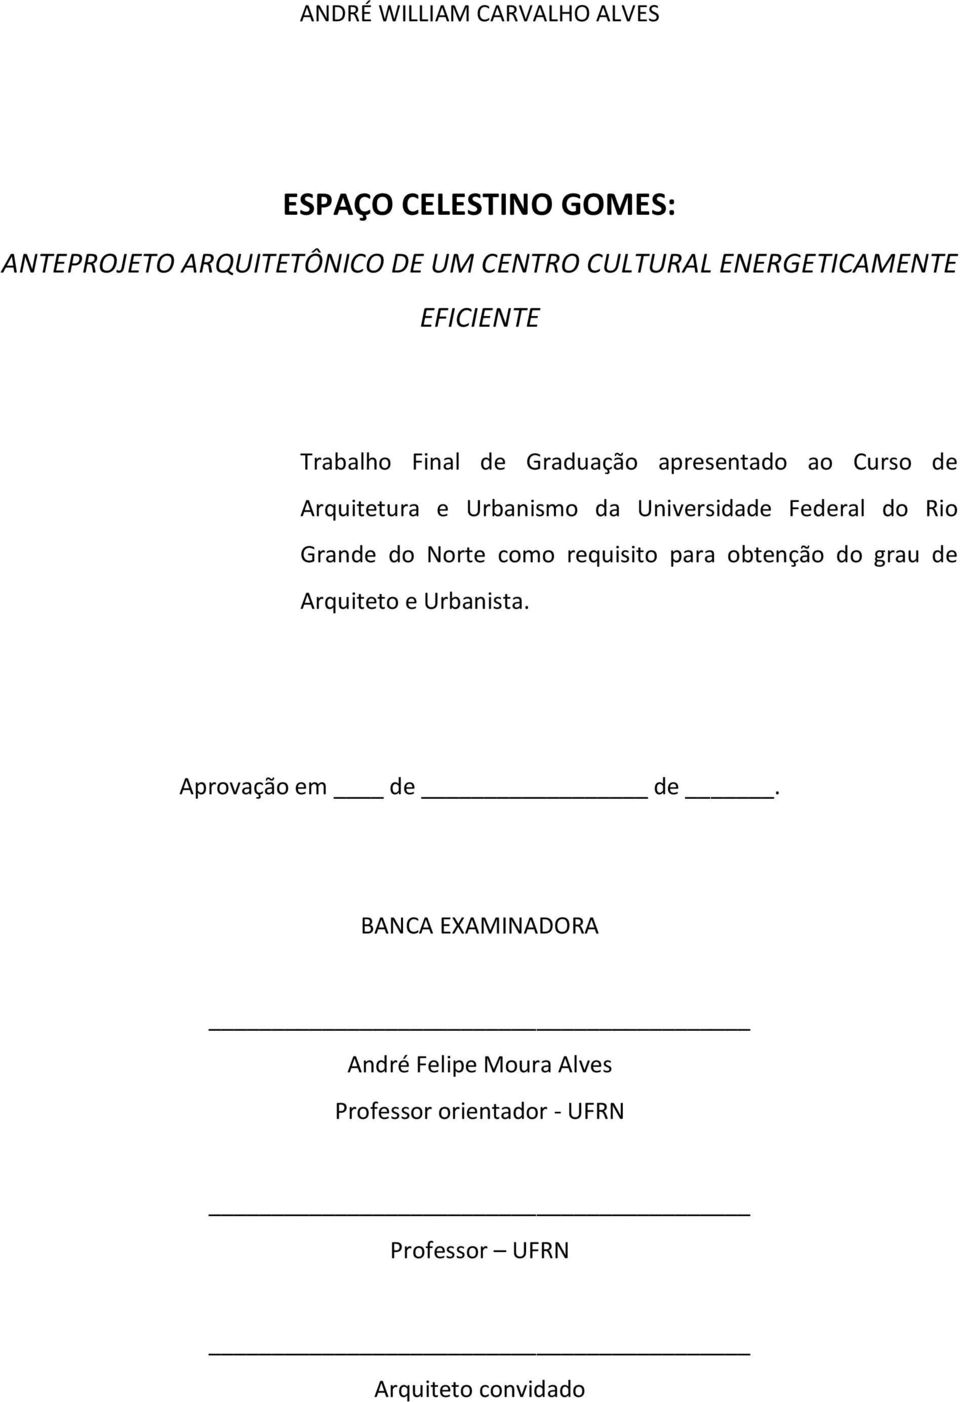 Universidade Federal do Rio Grande do Norte como requisito para obtenção do grau de Arquiteto e Urbanista.